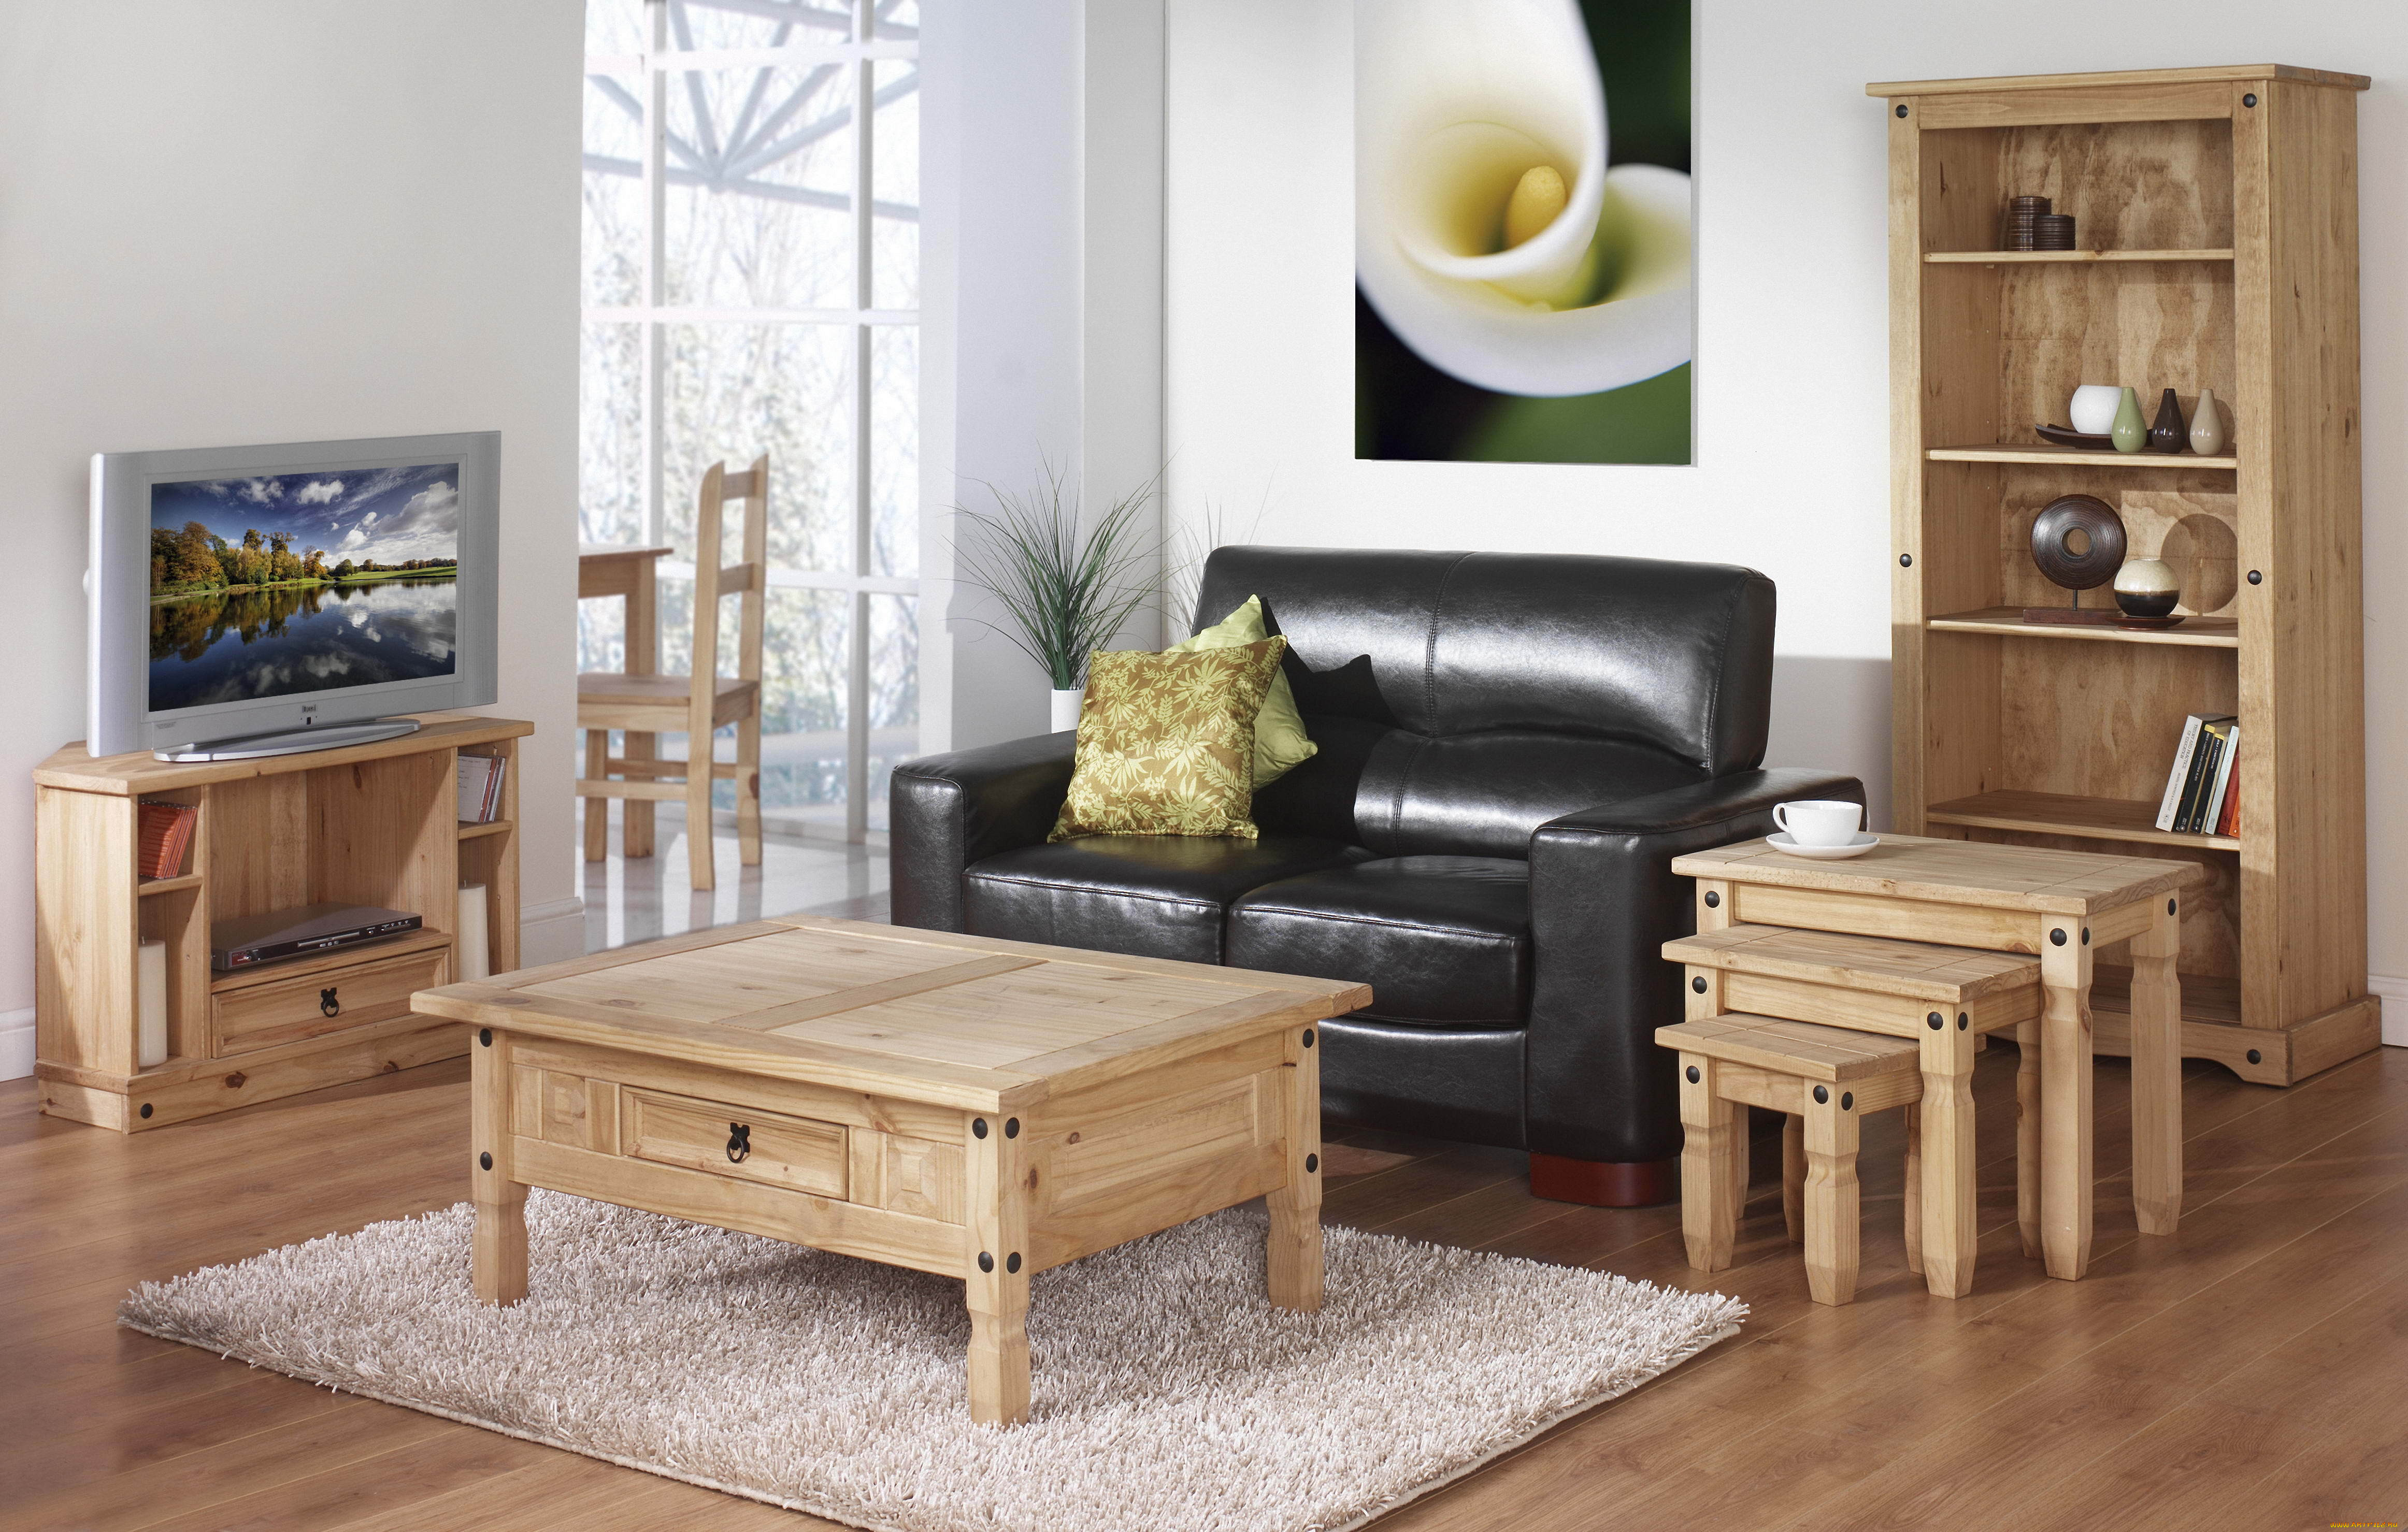 Изготавливается мебель. Красивая деревянная мебель. Современная деревянная мебель. Мебель из дерева в интерьере. Комната с деревянной мебелью.